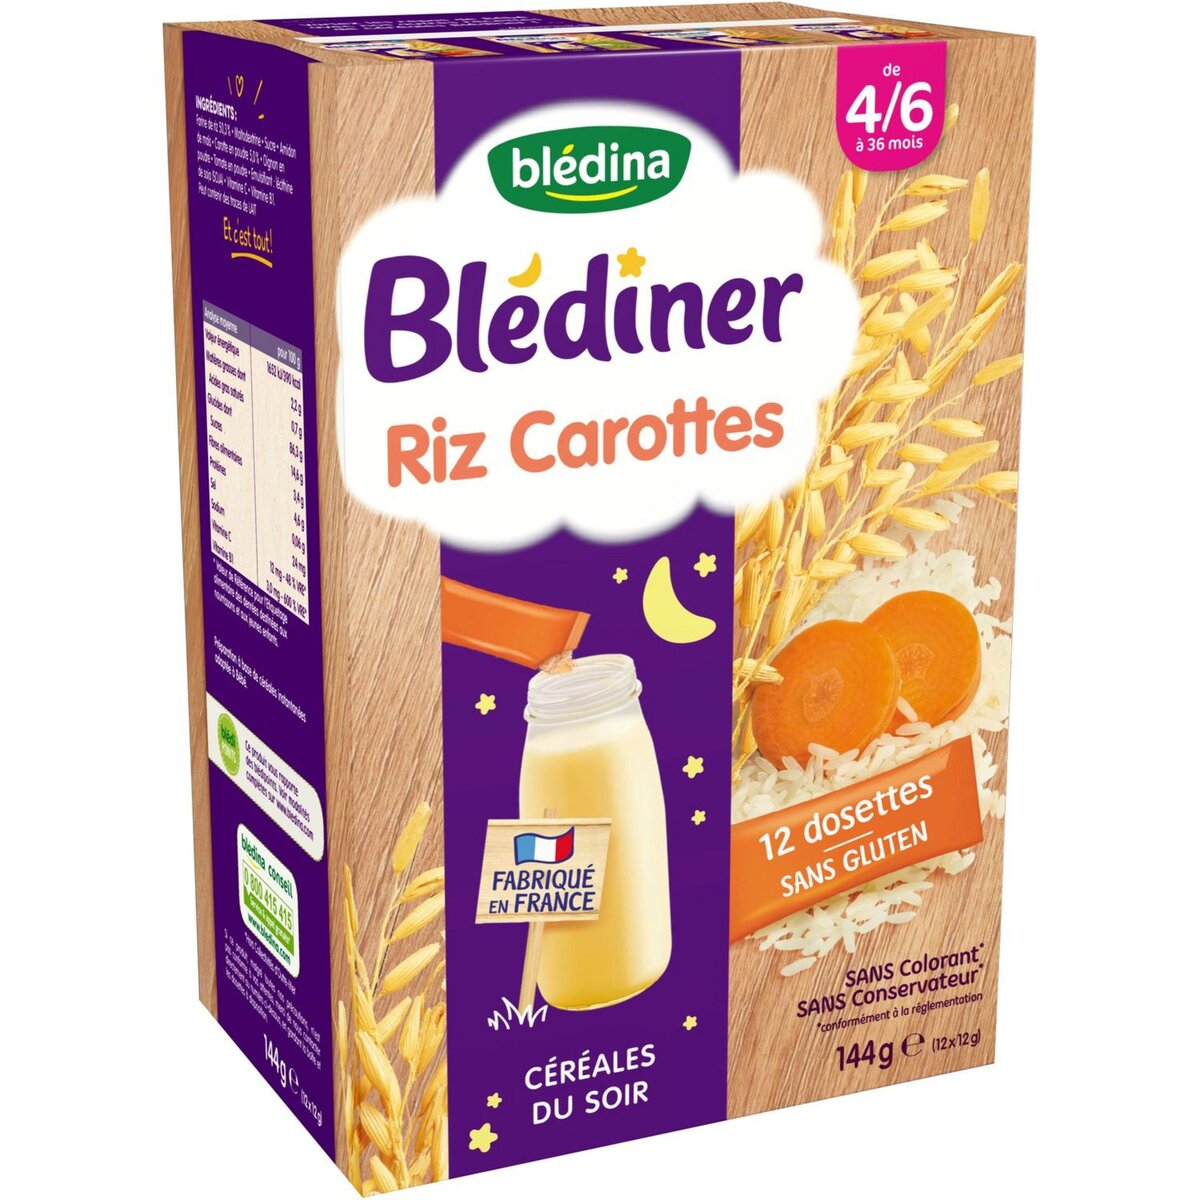 Promo Blédina céréales blédine chez Carrefour